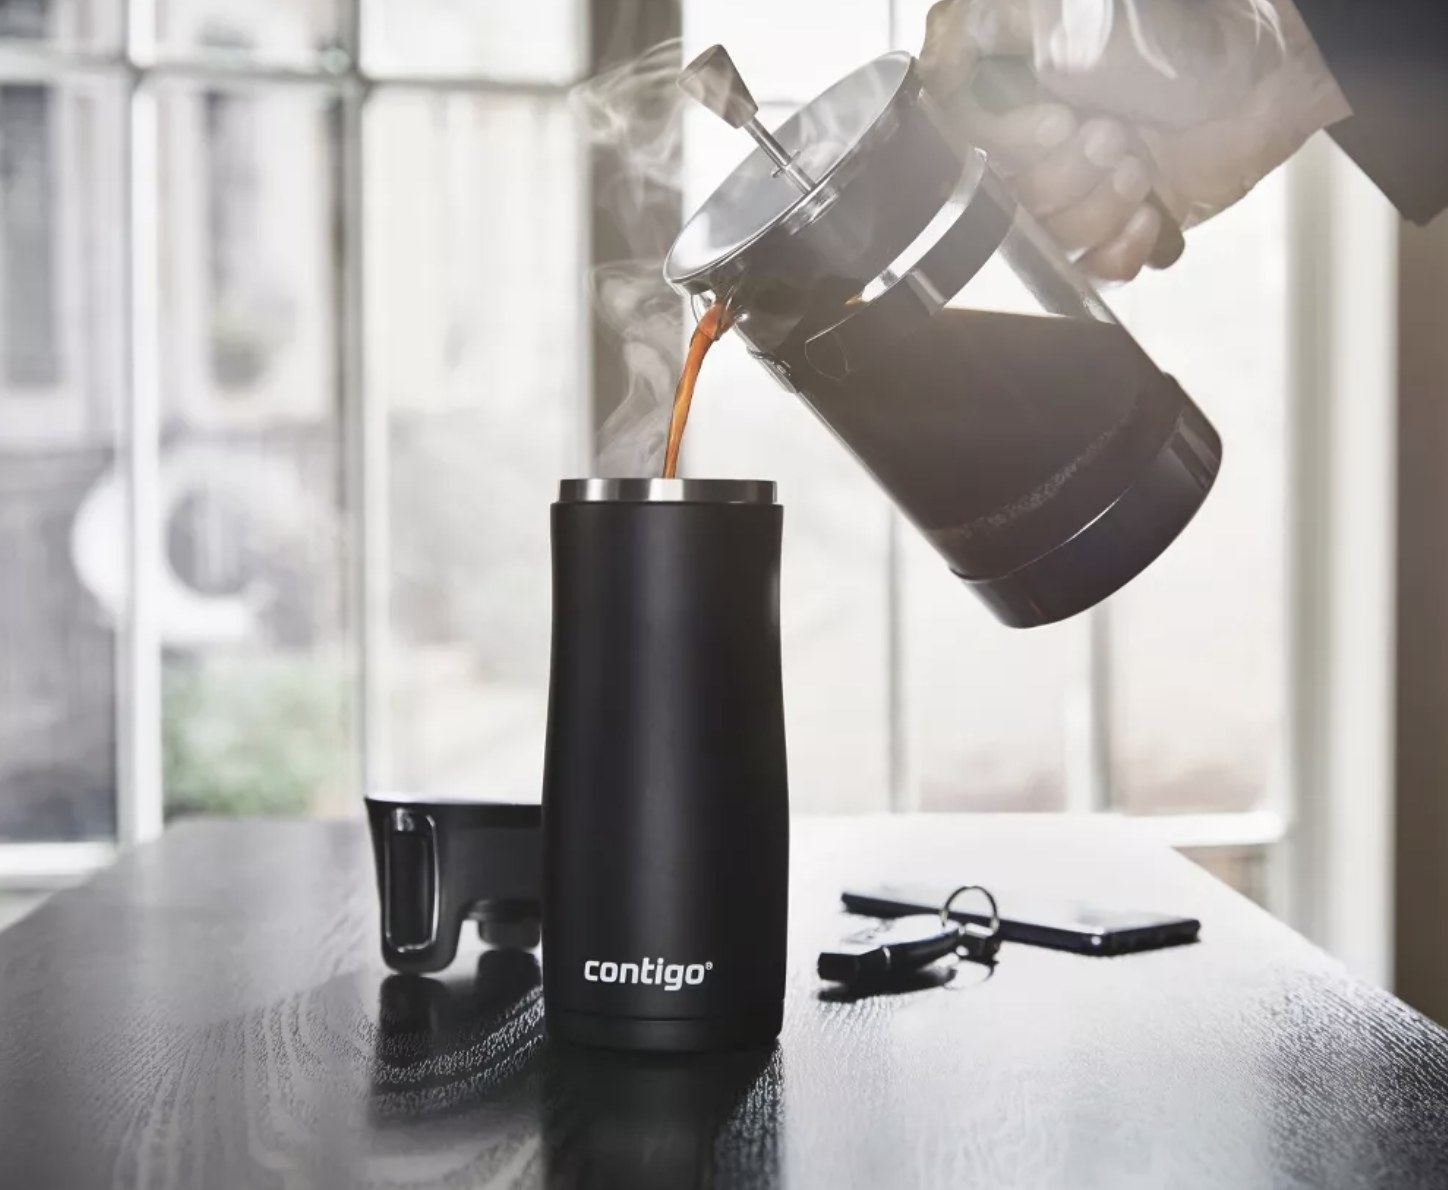 model pours French press coffee into Contigo travel mug